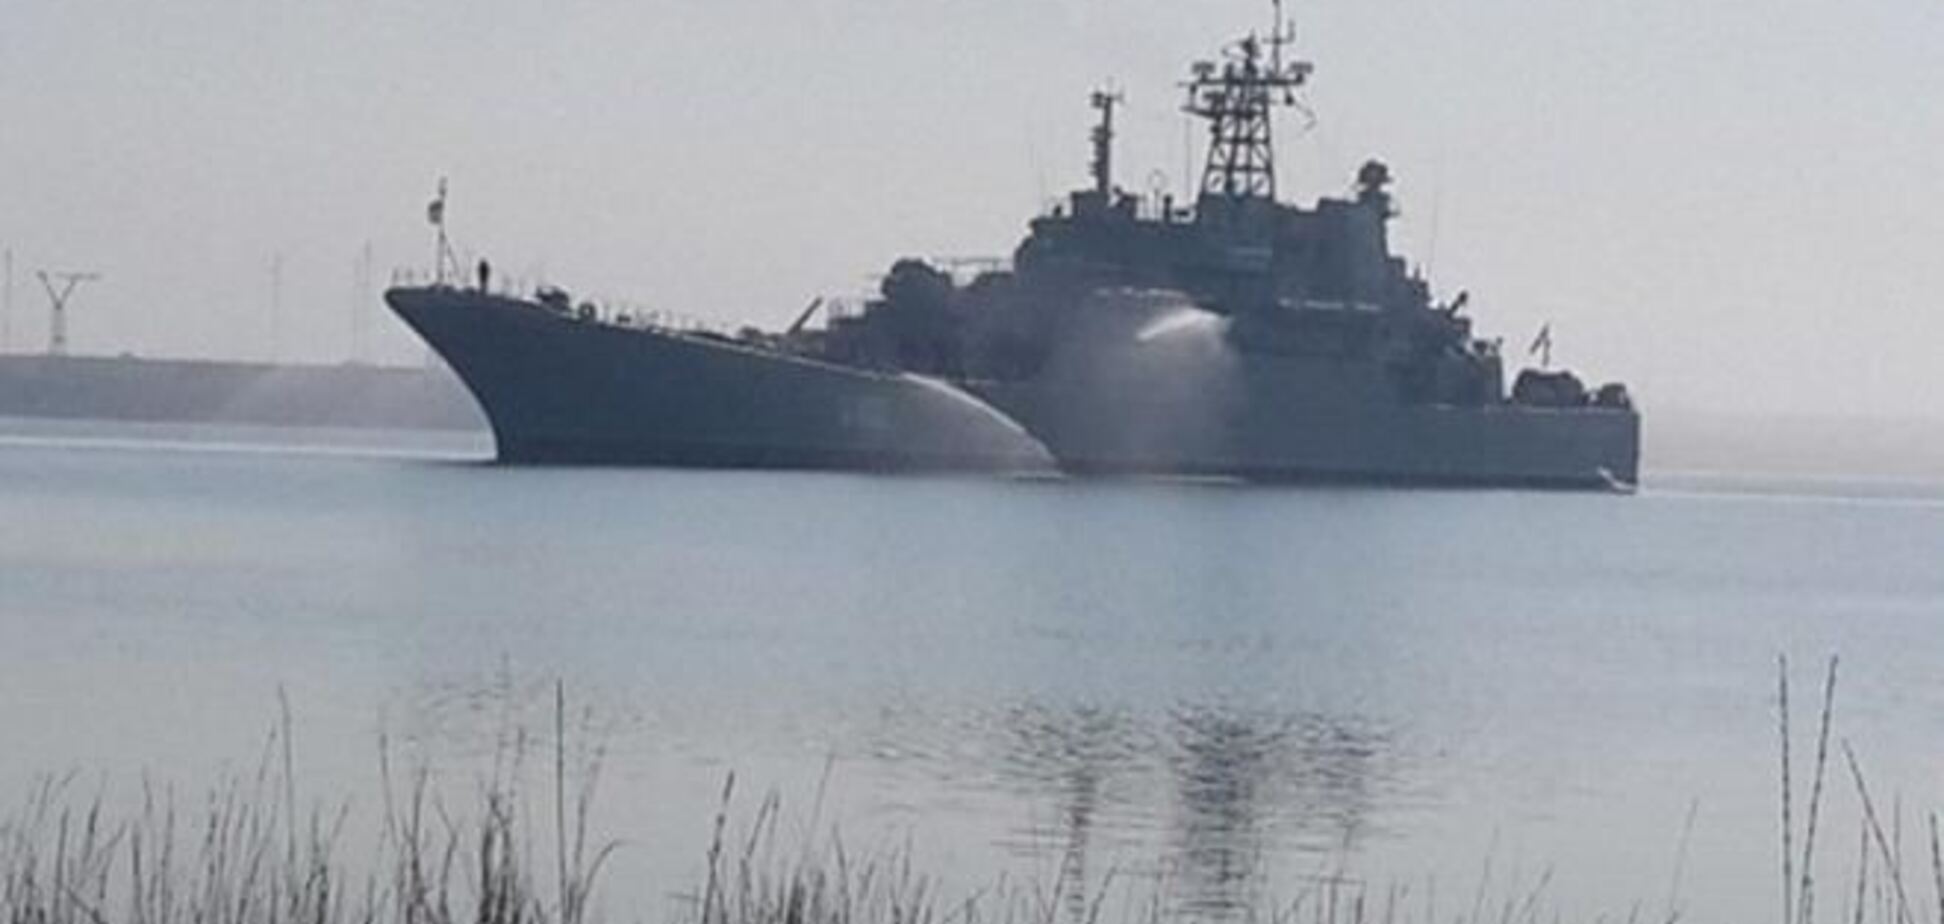 Перед штурмом моряки 'Ольшанского' испортили машину и электронику корабля – СМИ